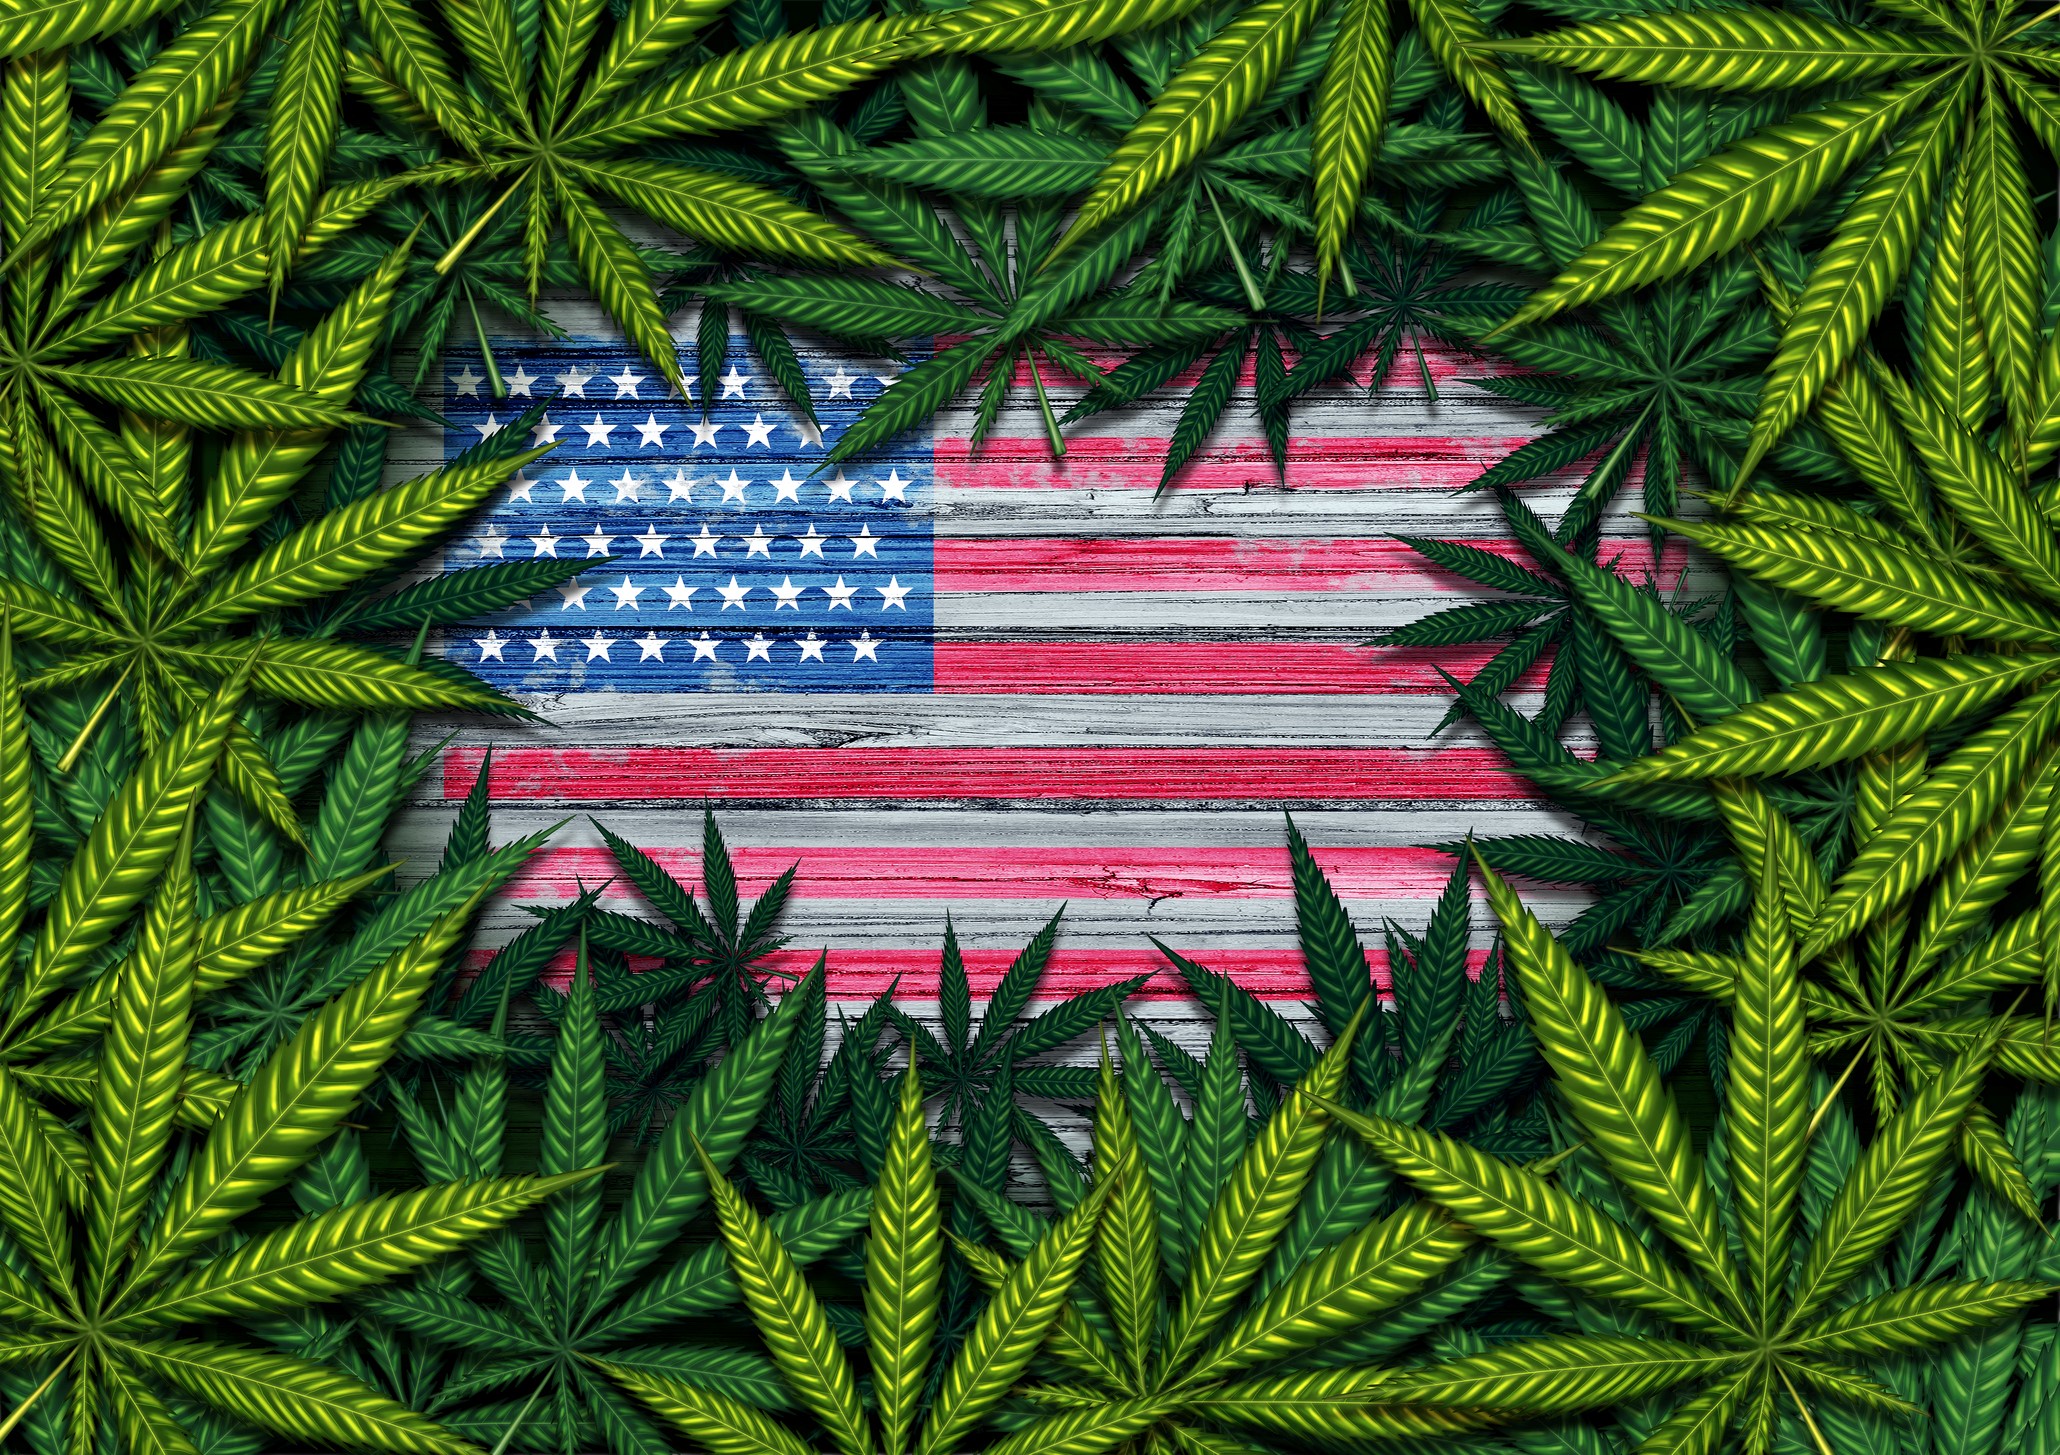 Horizons ETFs to Launch World’s First U.S.-Focused Marijuana ETF